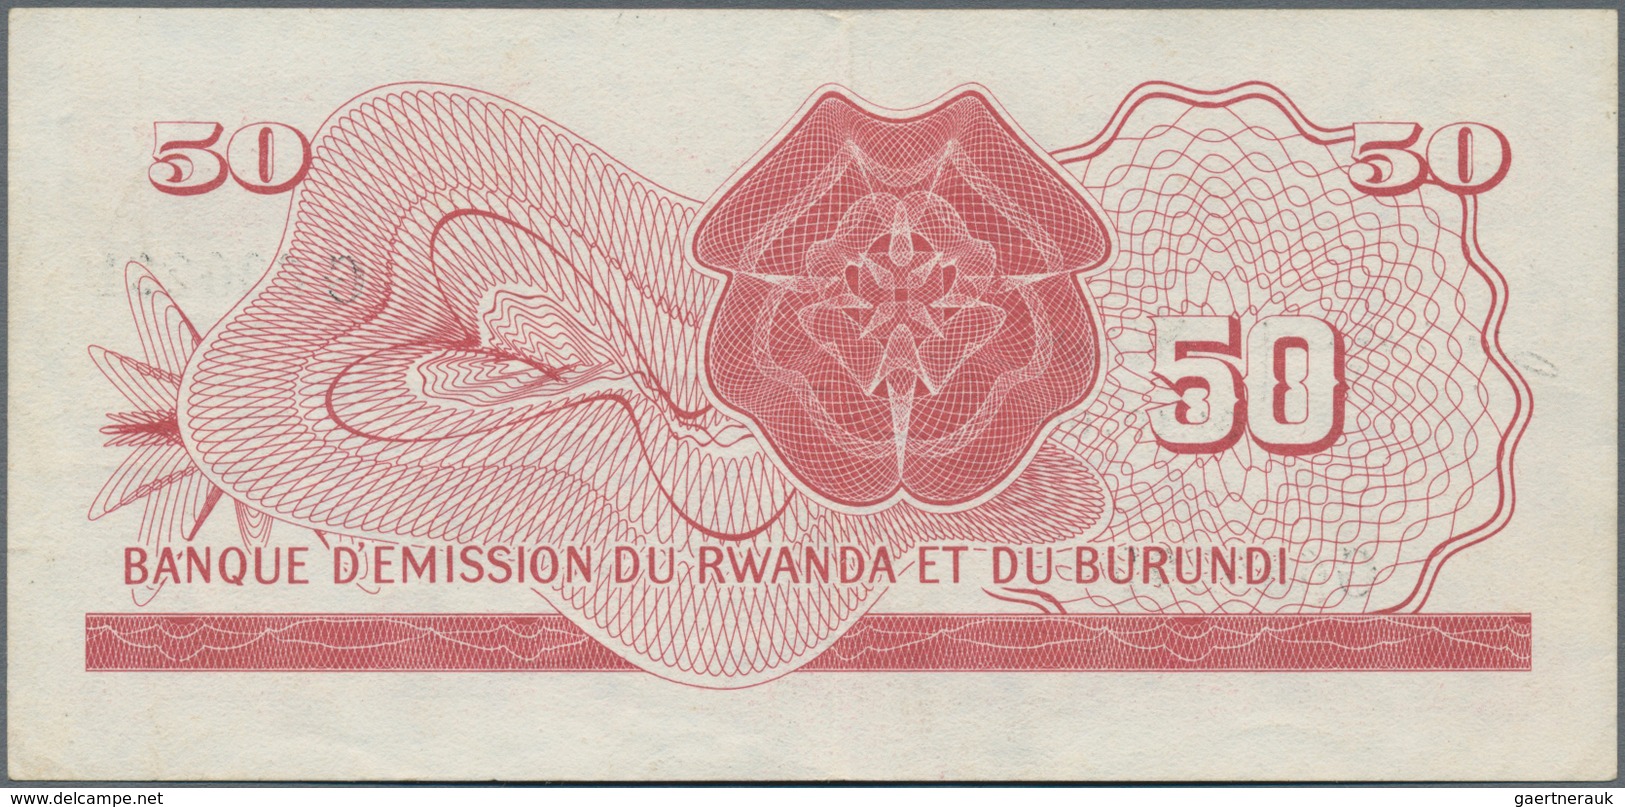 Rwanda-Burundi / Ruanda-Burundi: Banque D'Émission Du Rwanda Et Du Burundi 50 Francs 1960, P.4, Grea - Ruanda-Urundi